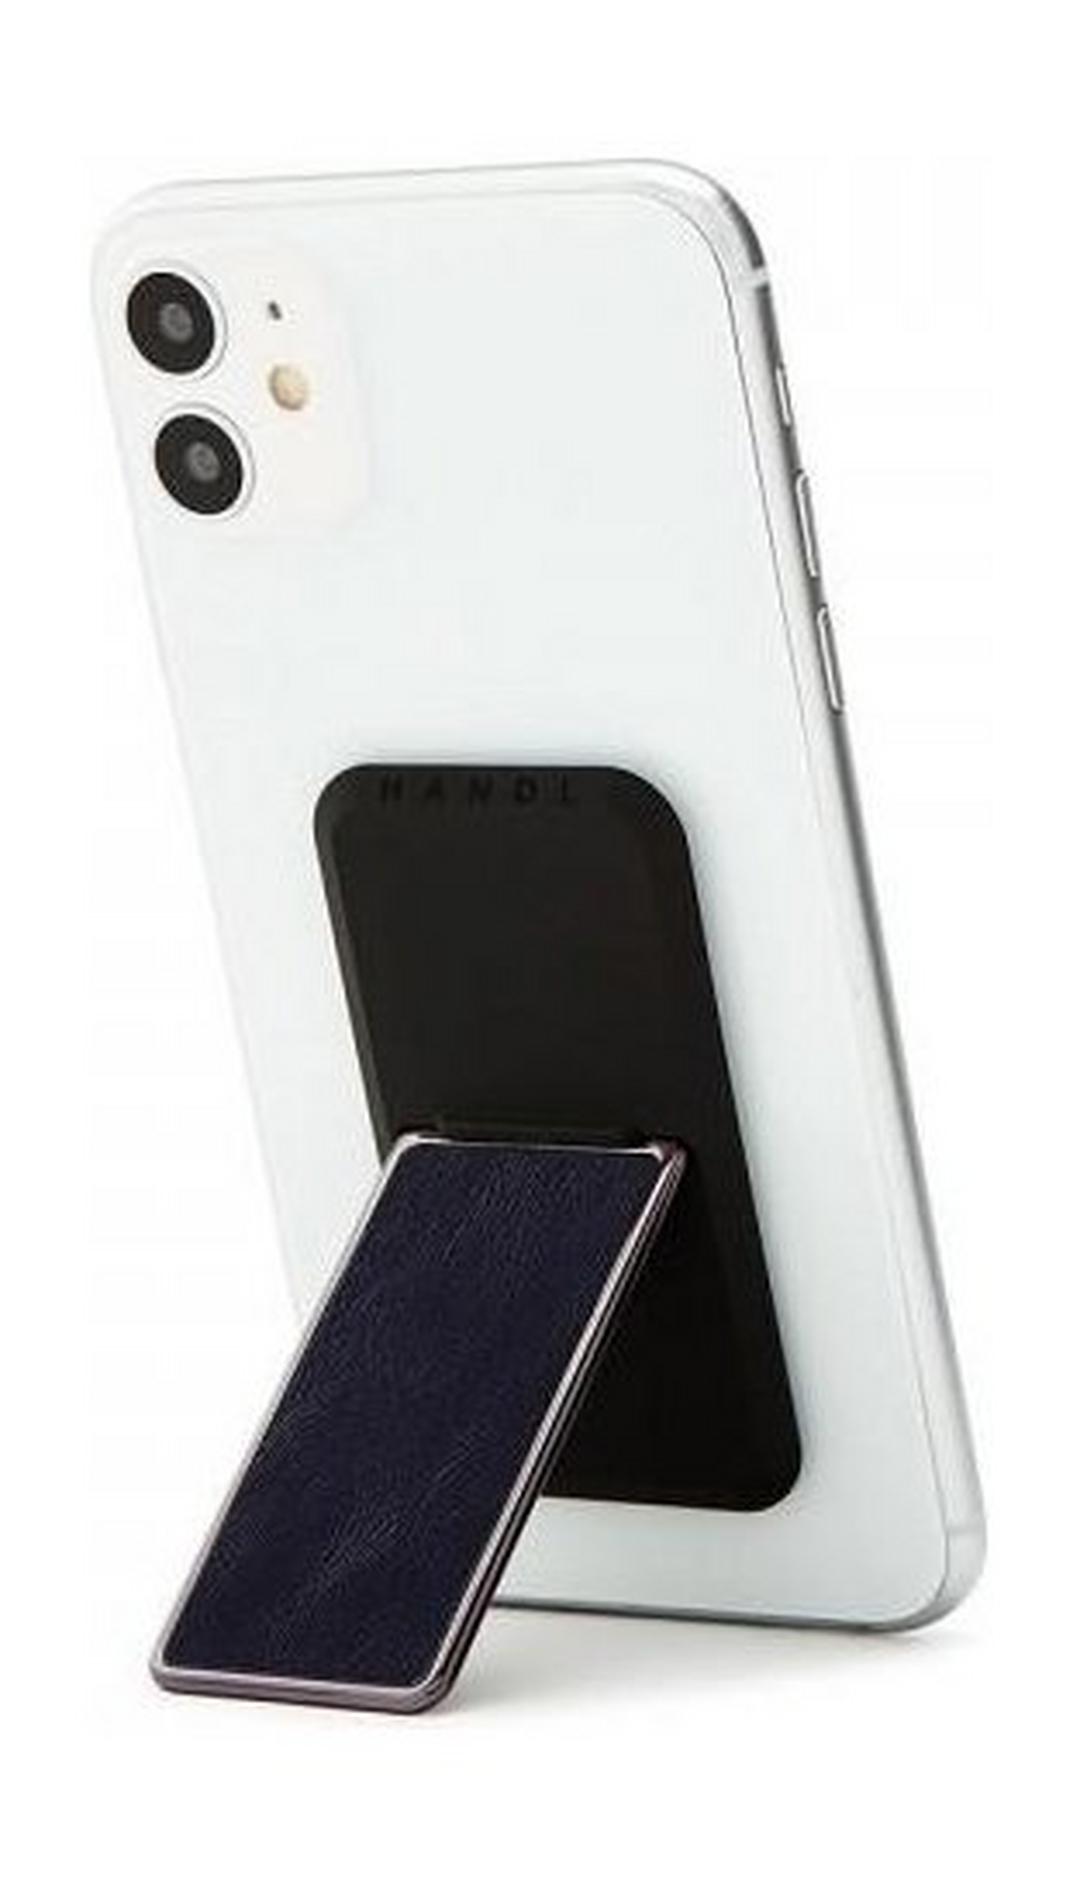 HANDLstick Smooth Leather Smartphone Holder- Black/Gold